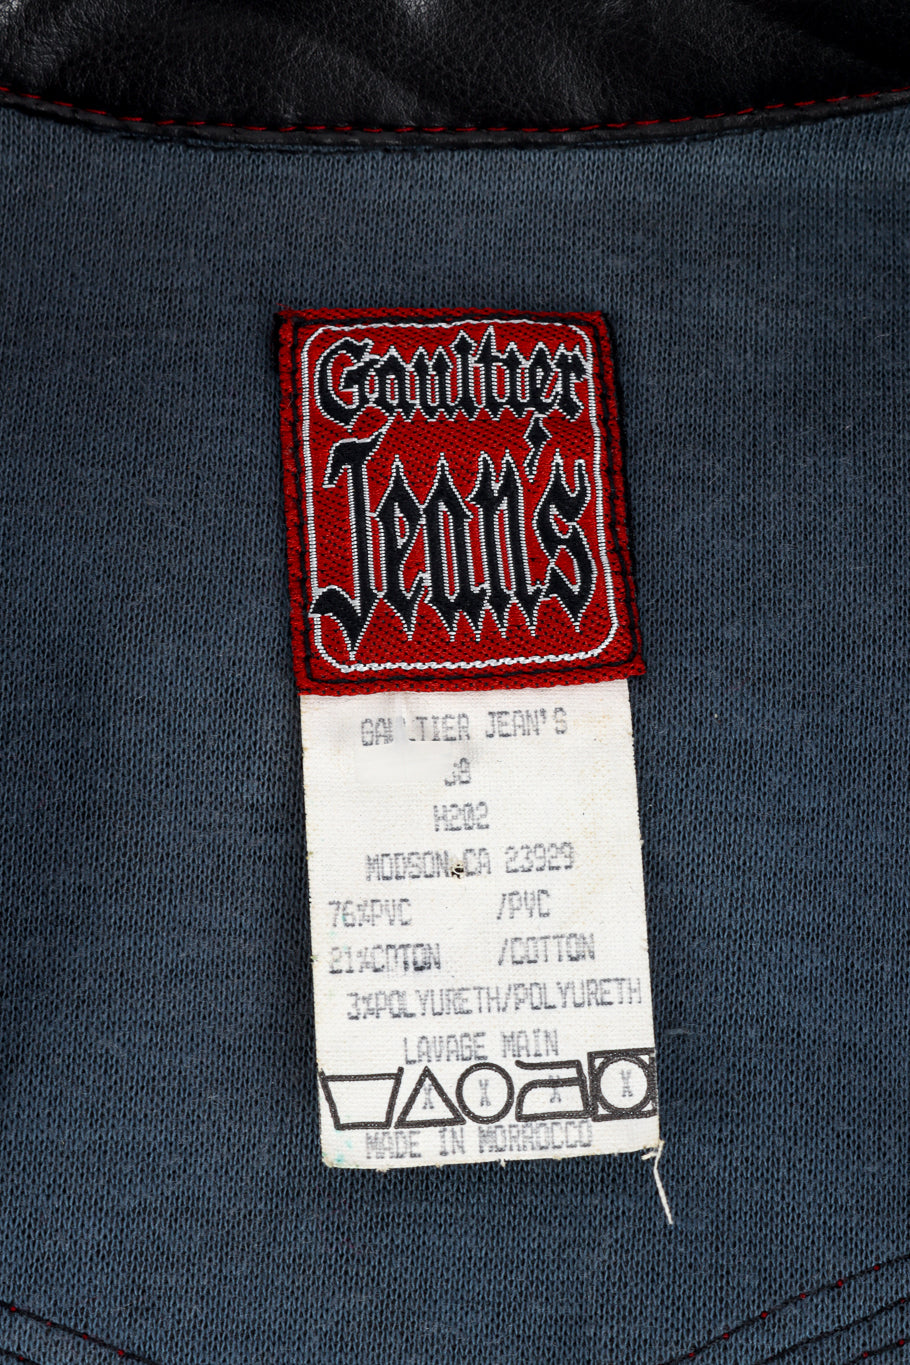 Vintage Jean Paul Gaultier Jeans PVC Western style jacket close up label care instructions @Recess LA